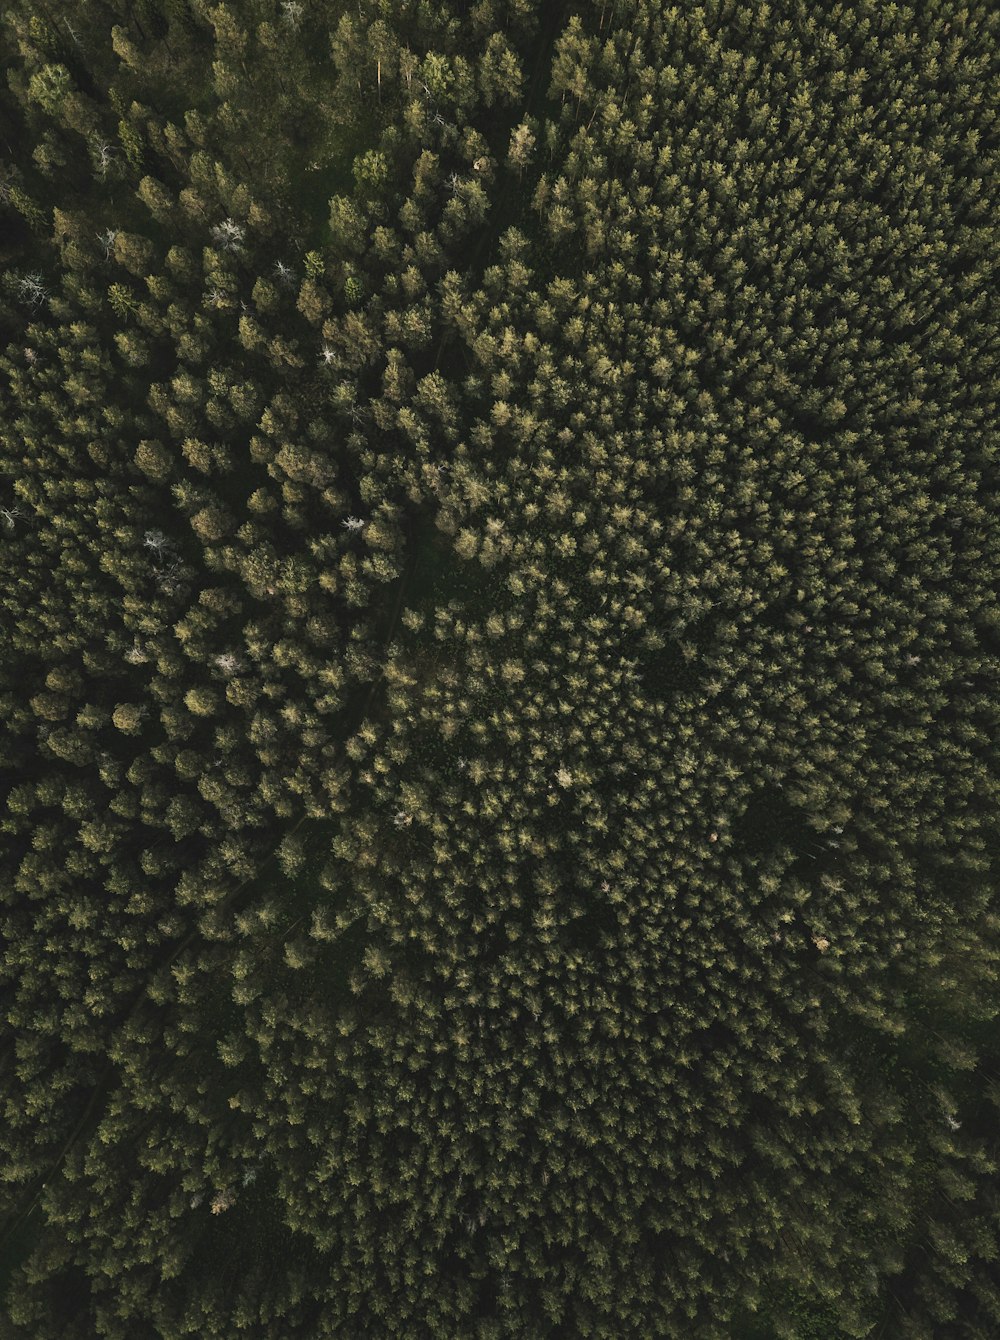 Fotografía aérea de árboles altos y verdes